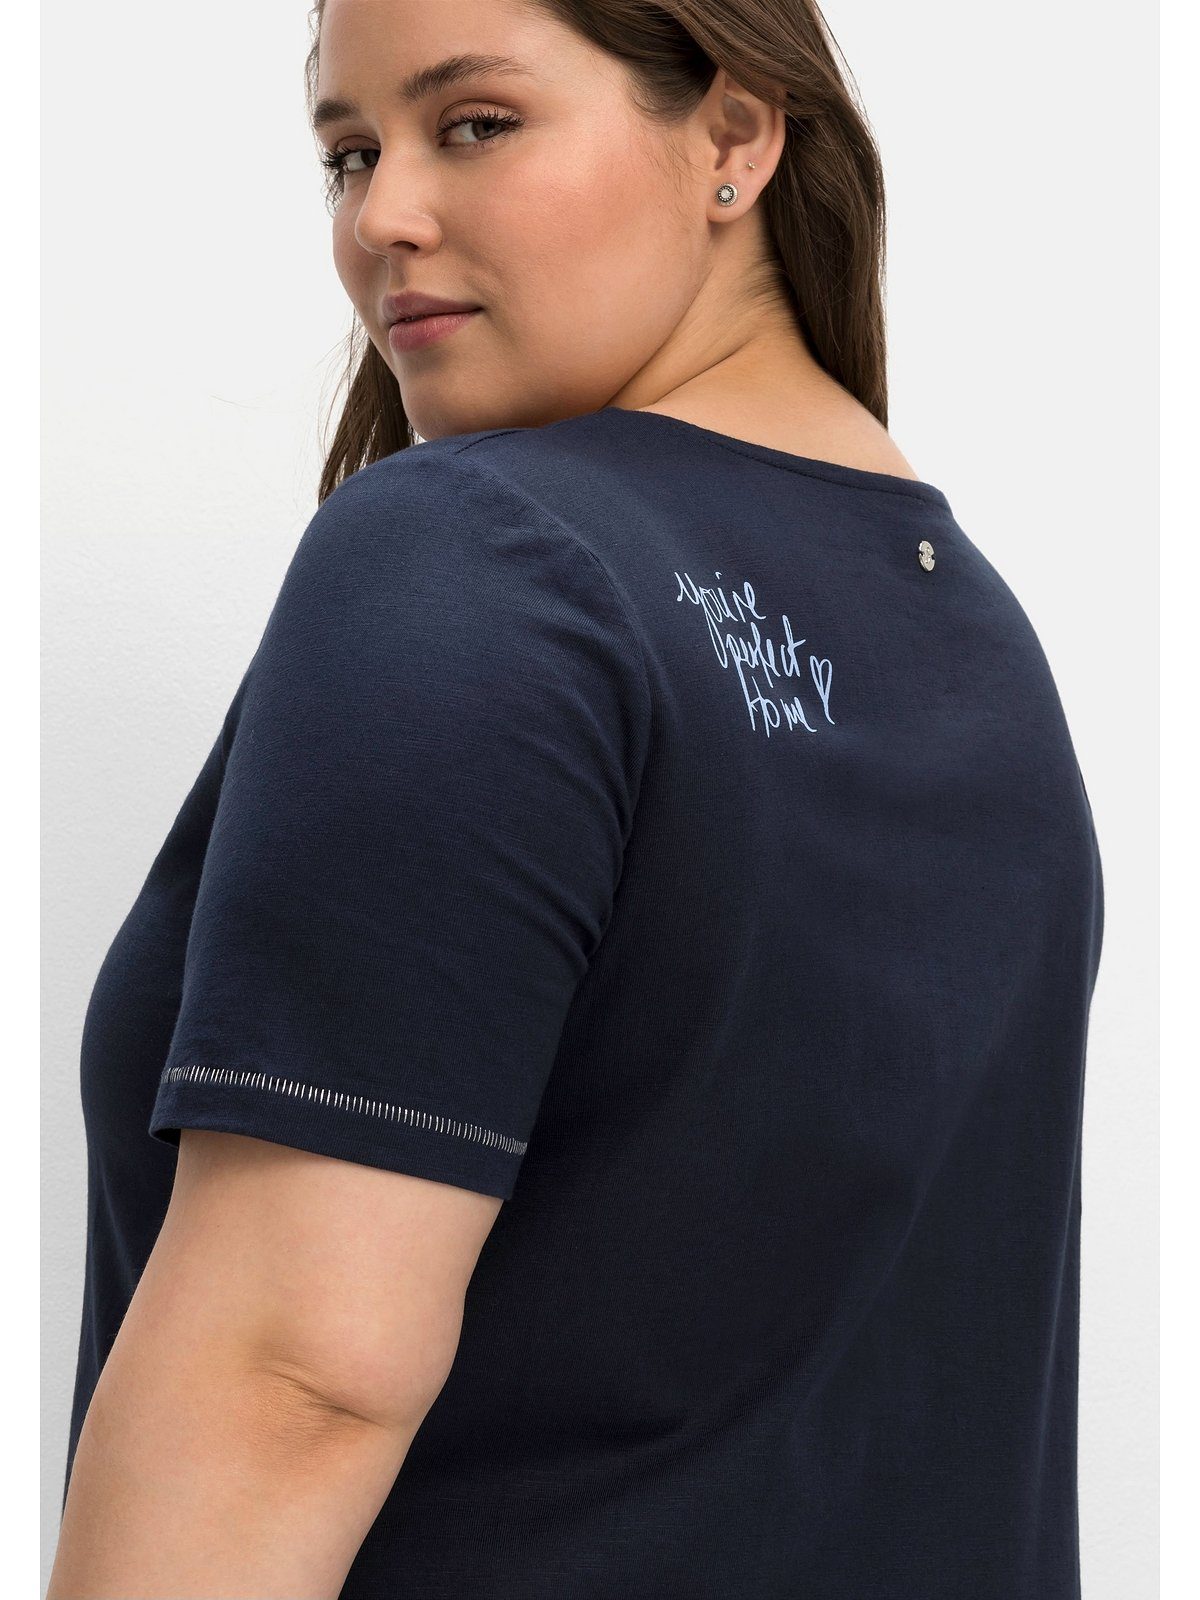 [Viele beliebte Produkte verfügbar] Sheego T-Shirt Große Größen mit Schulter der nachtblau Print auf hinten